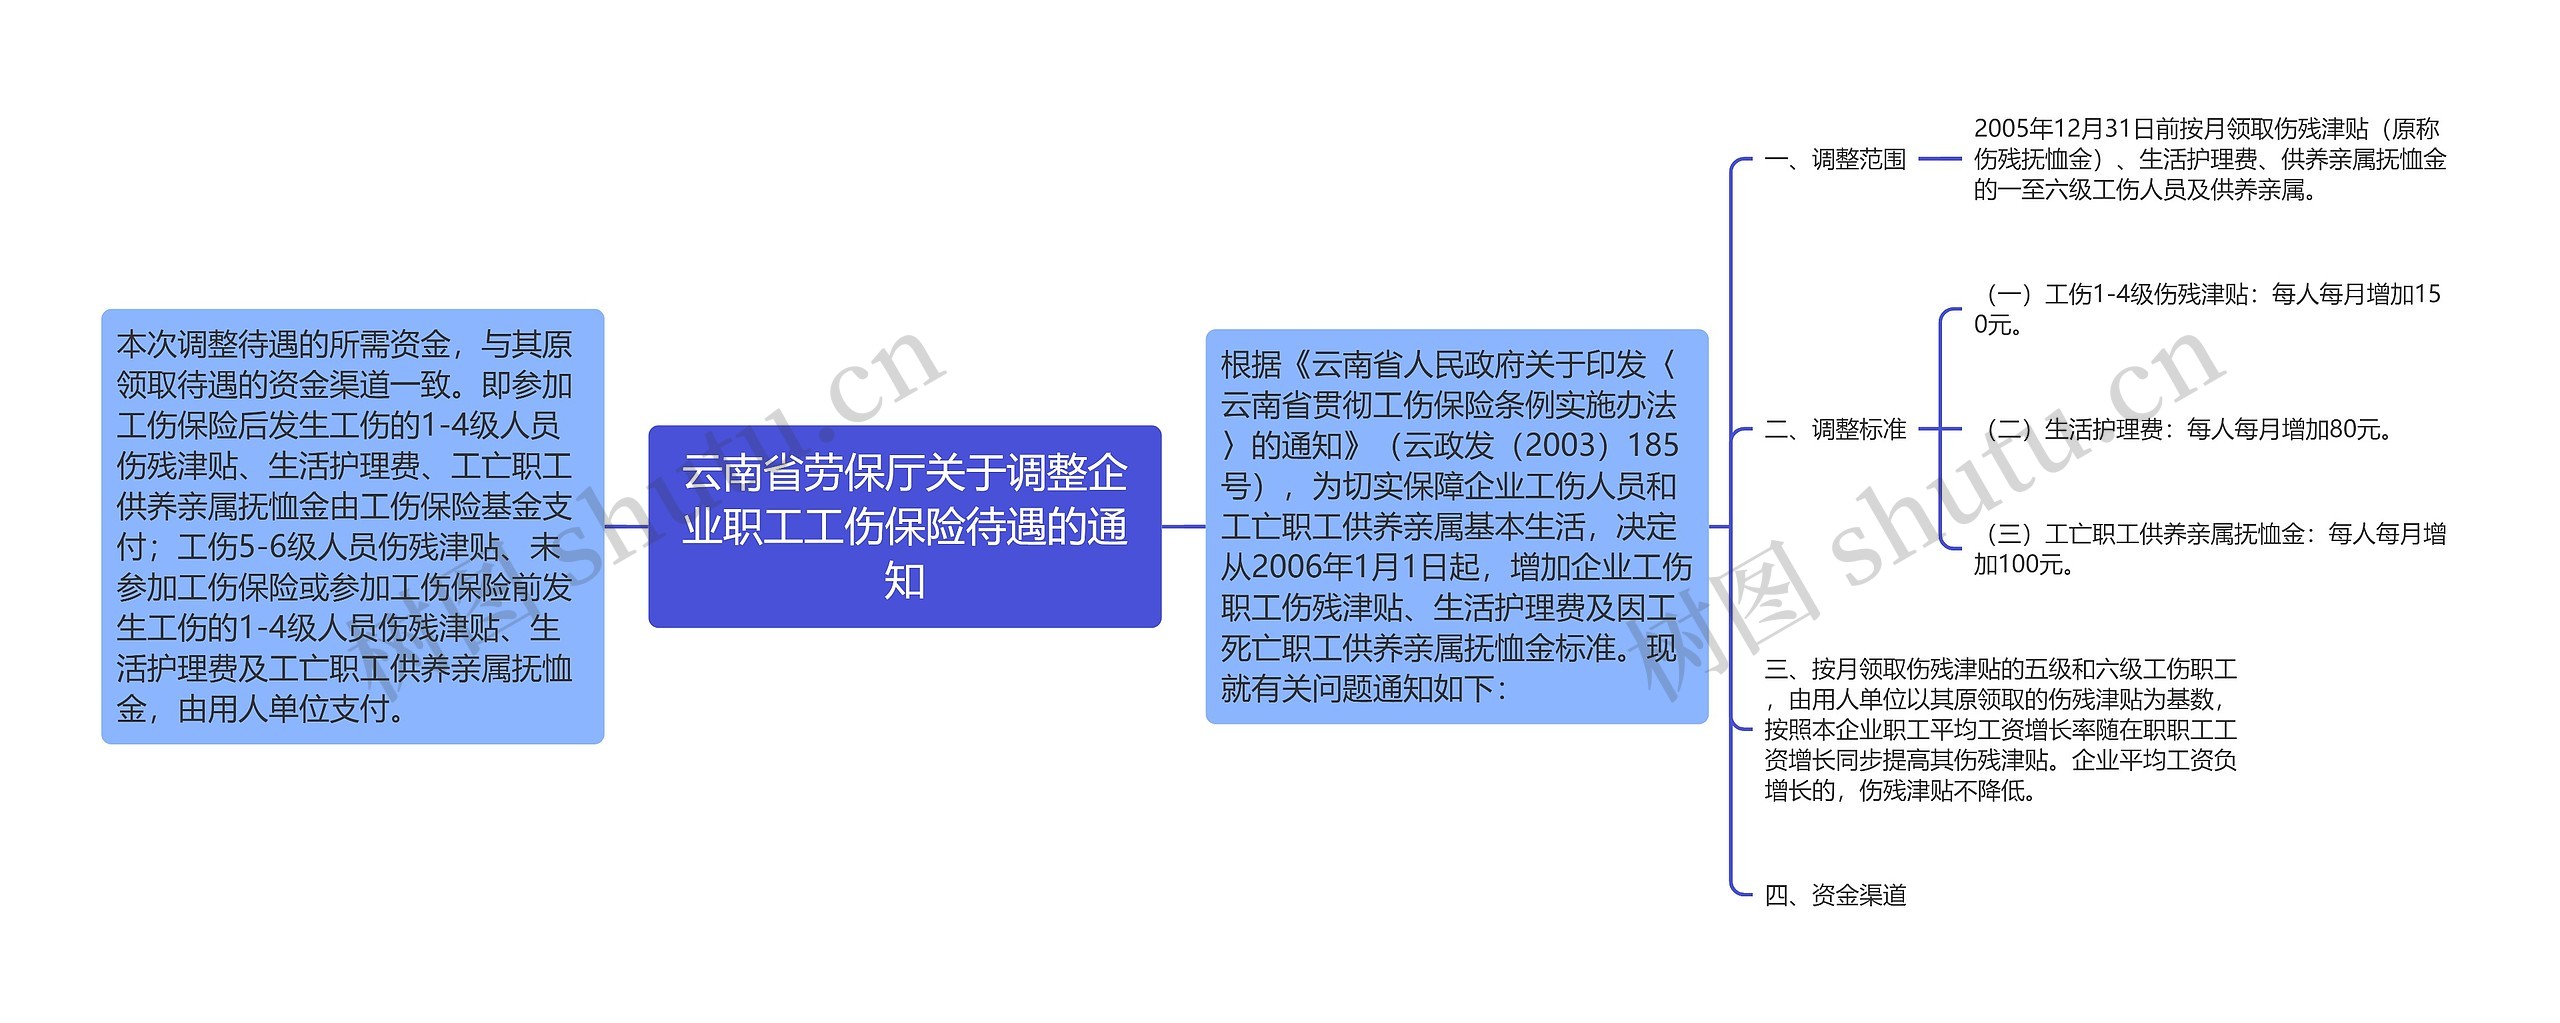 云南省劳保厅关于调整企业职工工伤保险待遇的通知思维导图